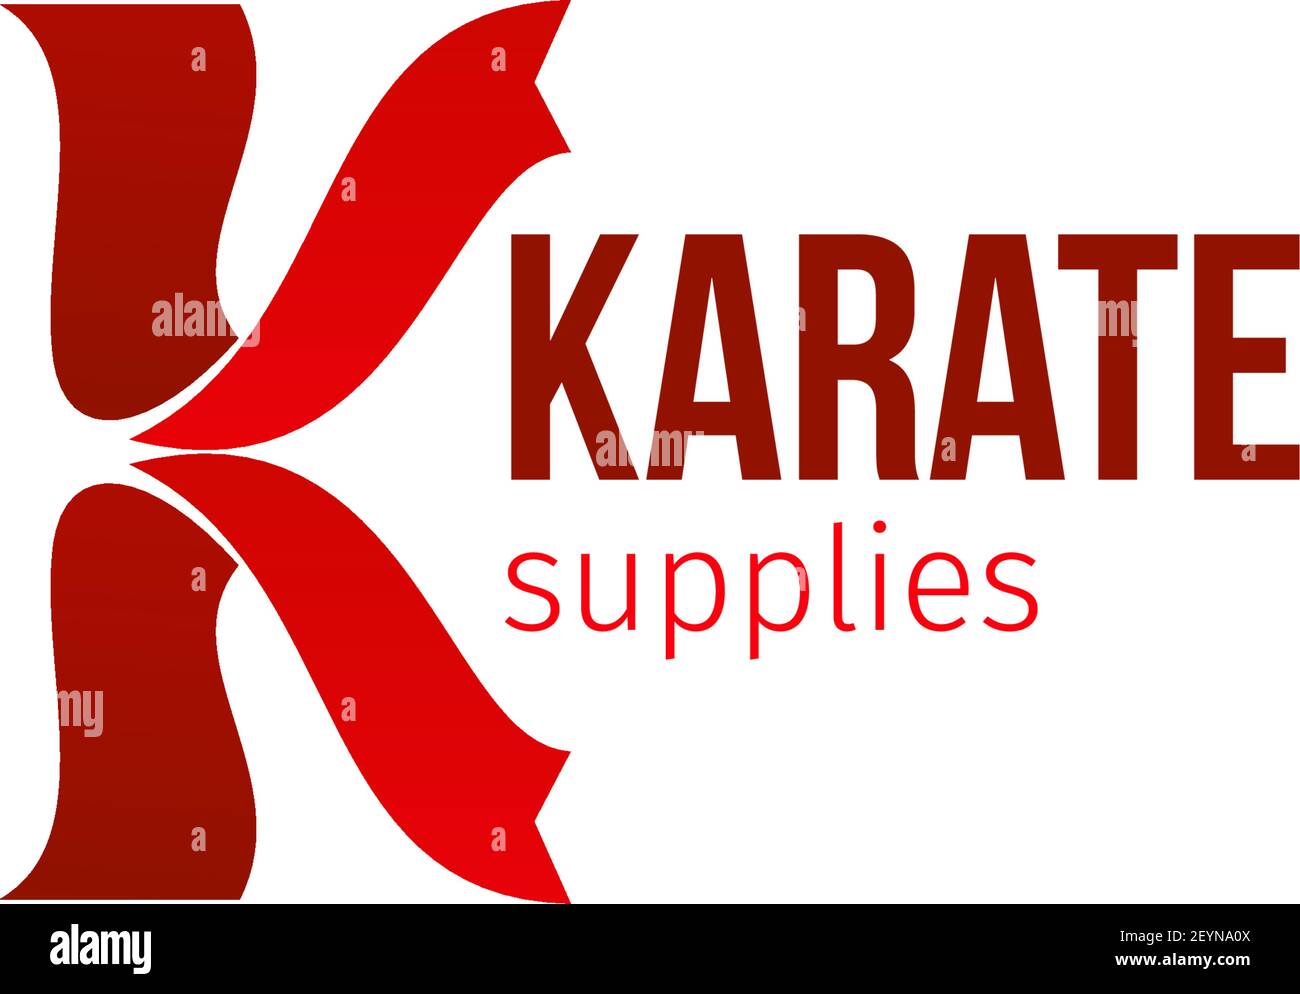 Vektor-Symbol für Karate Verbrauchsmaterial Geschäft isoliert auf weißem Hintergrund. Sportives Warengeschäft Emblem in roten Farben. Konzept von Kampf und Stärke, Zeichen für b Stock Vektor